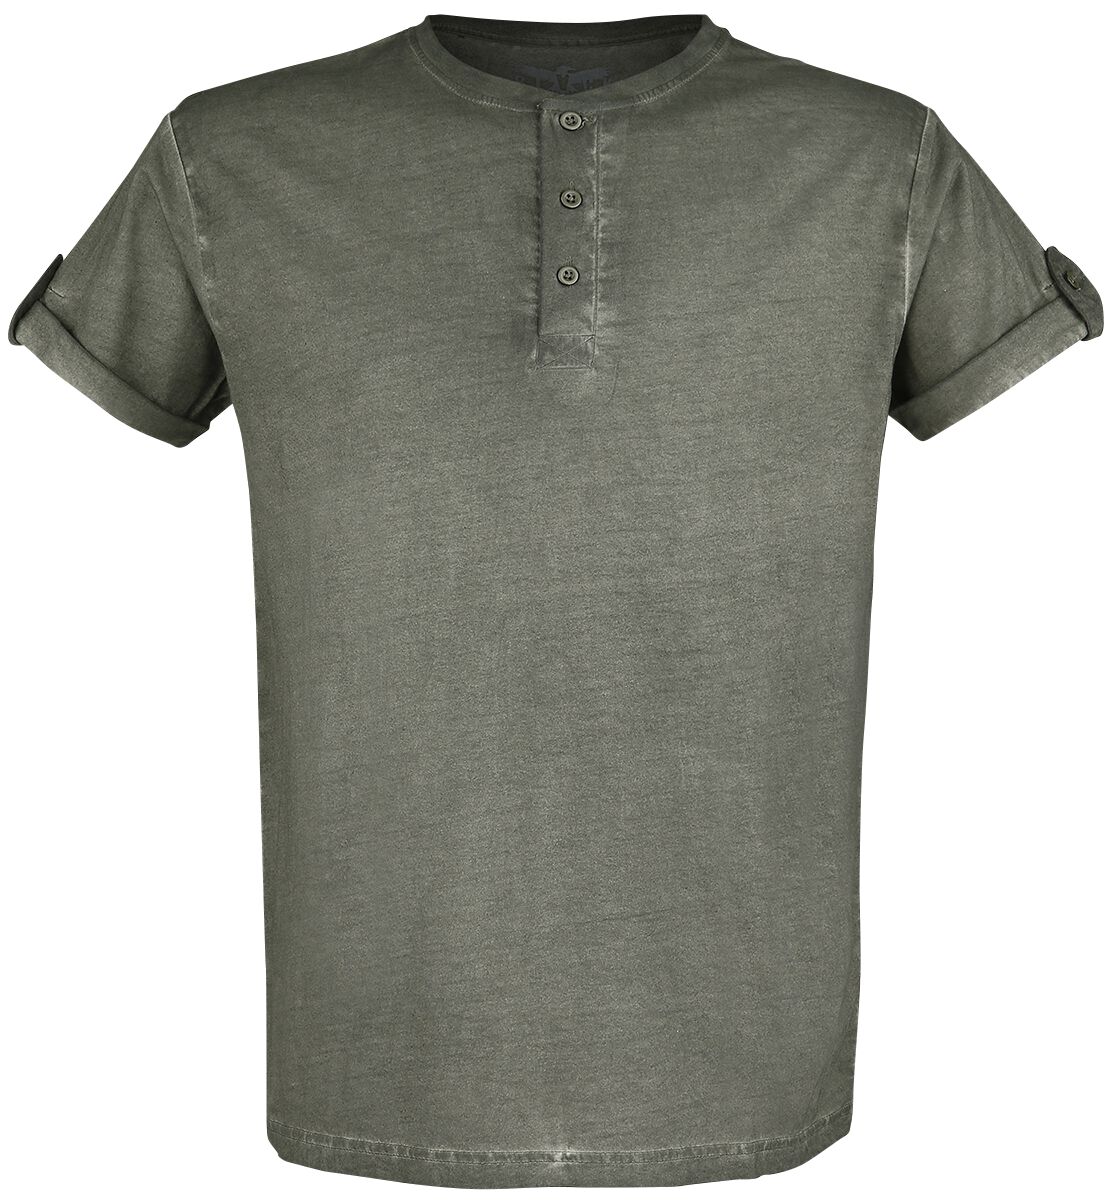 Black Premium by EMP grünes T-Shirt mit Knopfleiste und umgeschlagenen Ärmeln T-Shirt grün in XXL